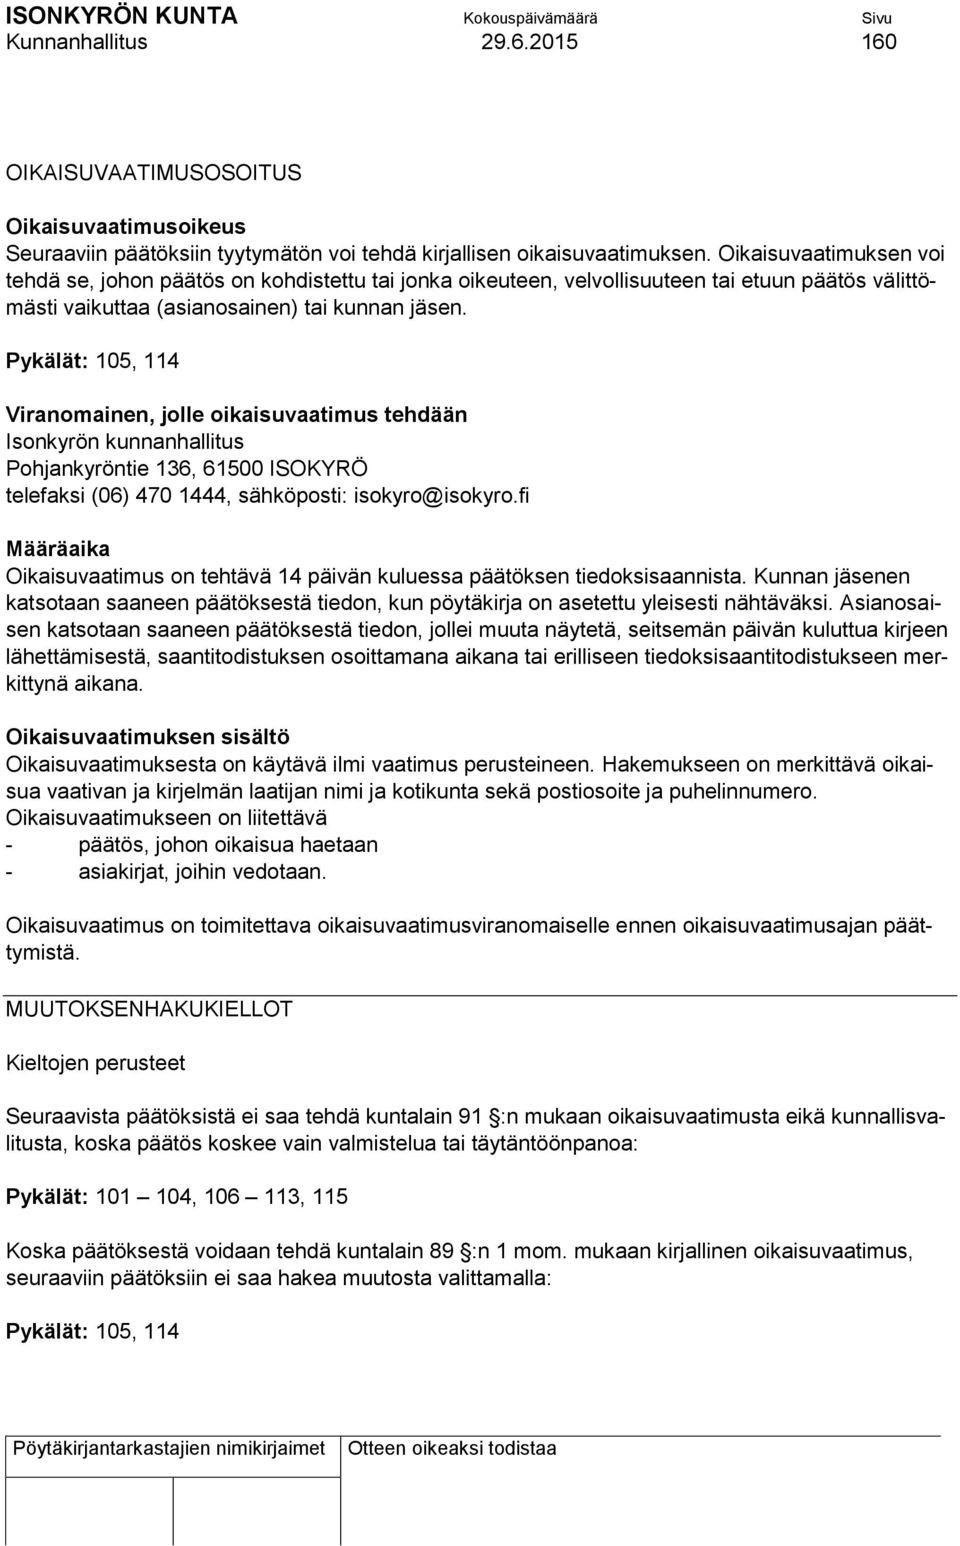 Pykälät: 105, 114 Viranomainen, jolle oikaisuvaatimus tehdään Isonkyrön kunnanhallitus Pohjankyröntie 136, 61500 ISOKYRÖ telefaksi (06) 470 1444, sähköposti: isokyro@isokyro.